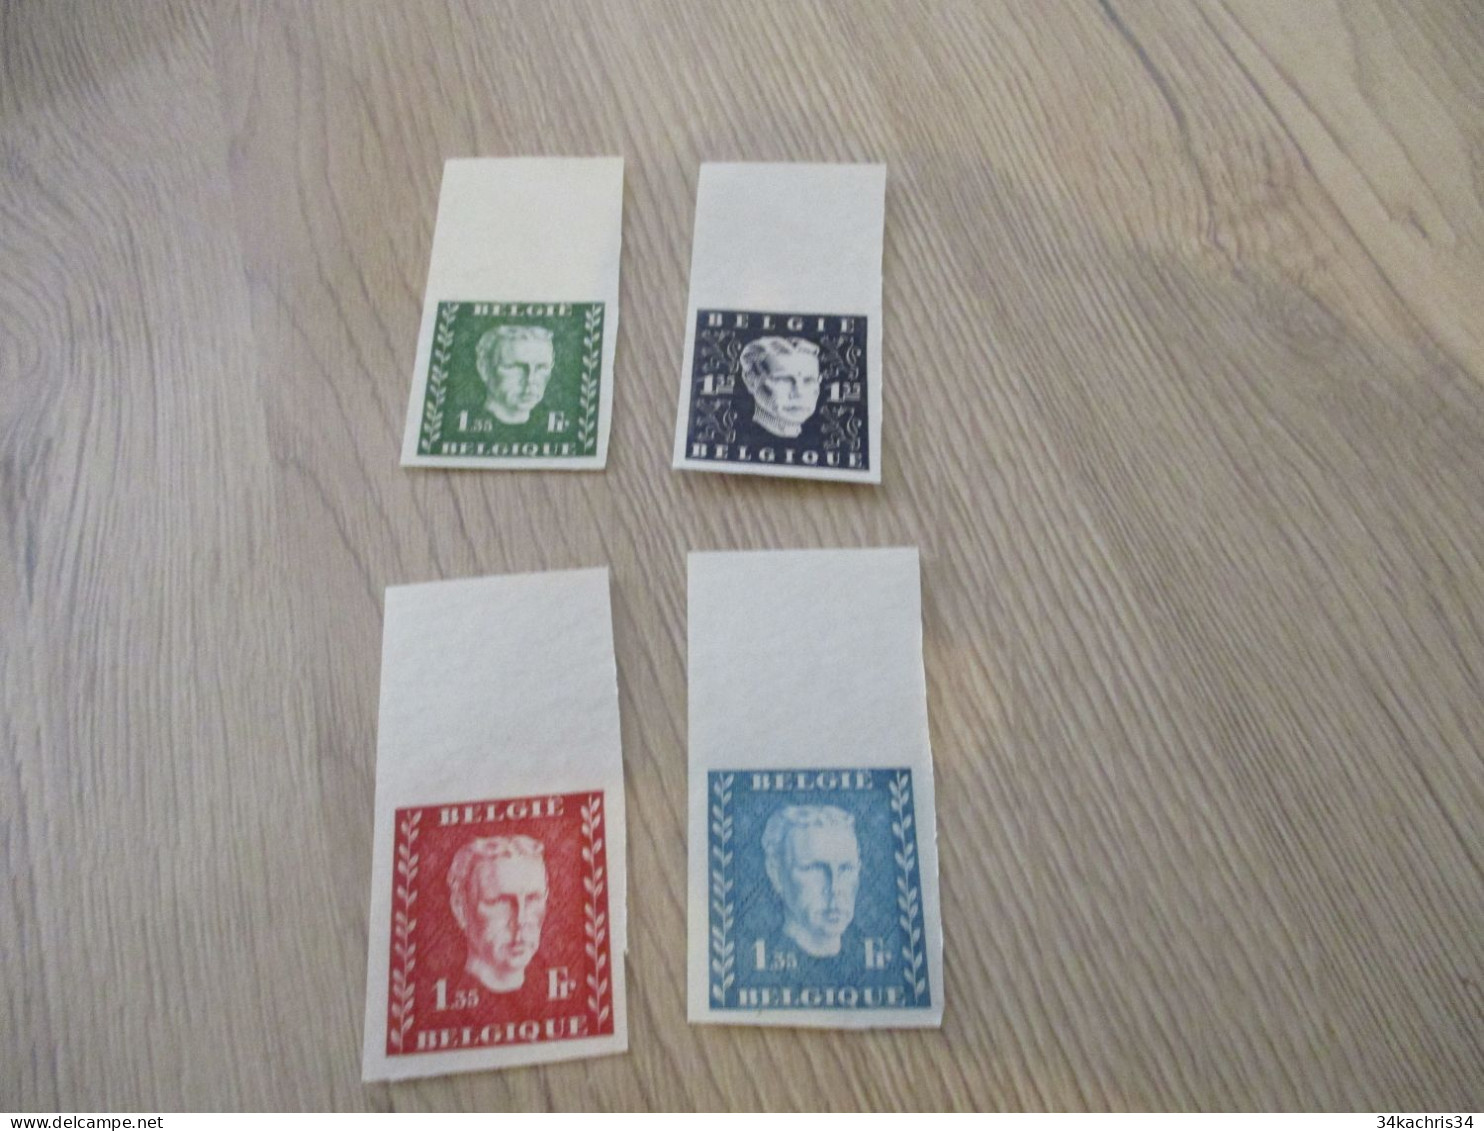 Essai - Prince Charles (1947) Belgique Belgie   4 Non Dentelés Sans Gomme Rare!!! - Proofs & Reprints